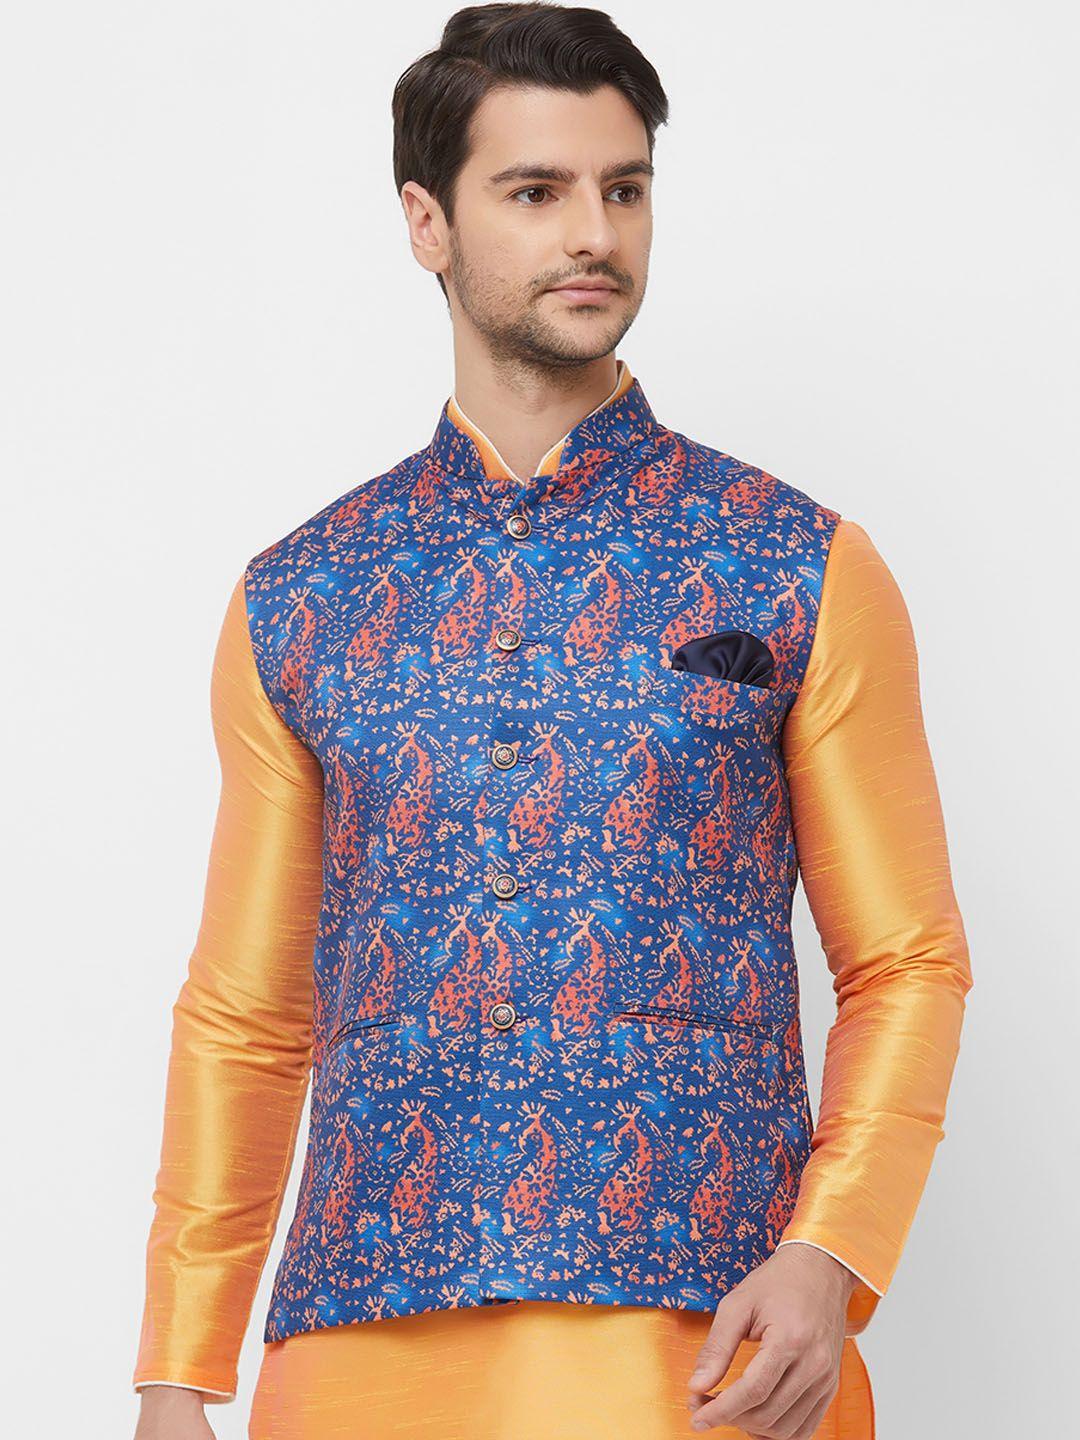 n-dot-men-blue-&-orange-paisley-printed-woven-nehru-jacket